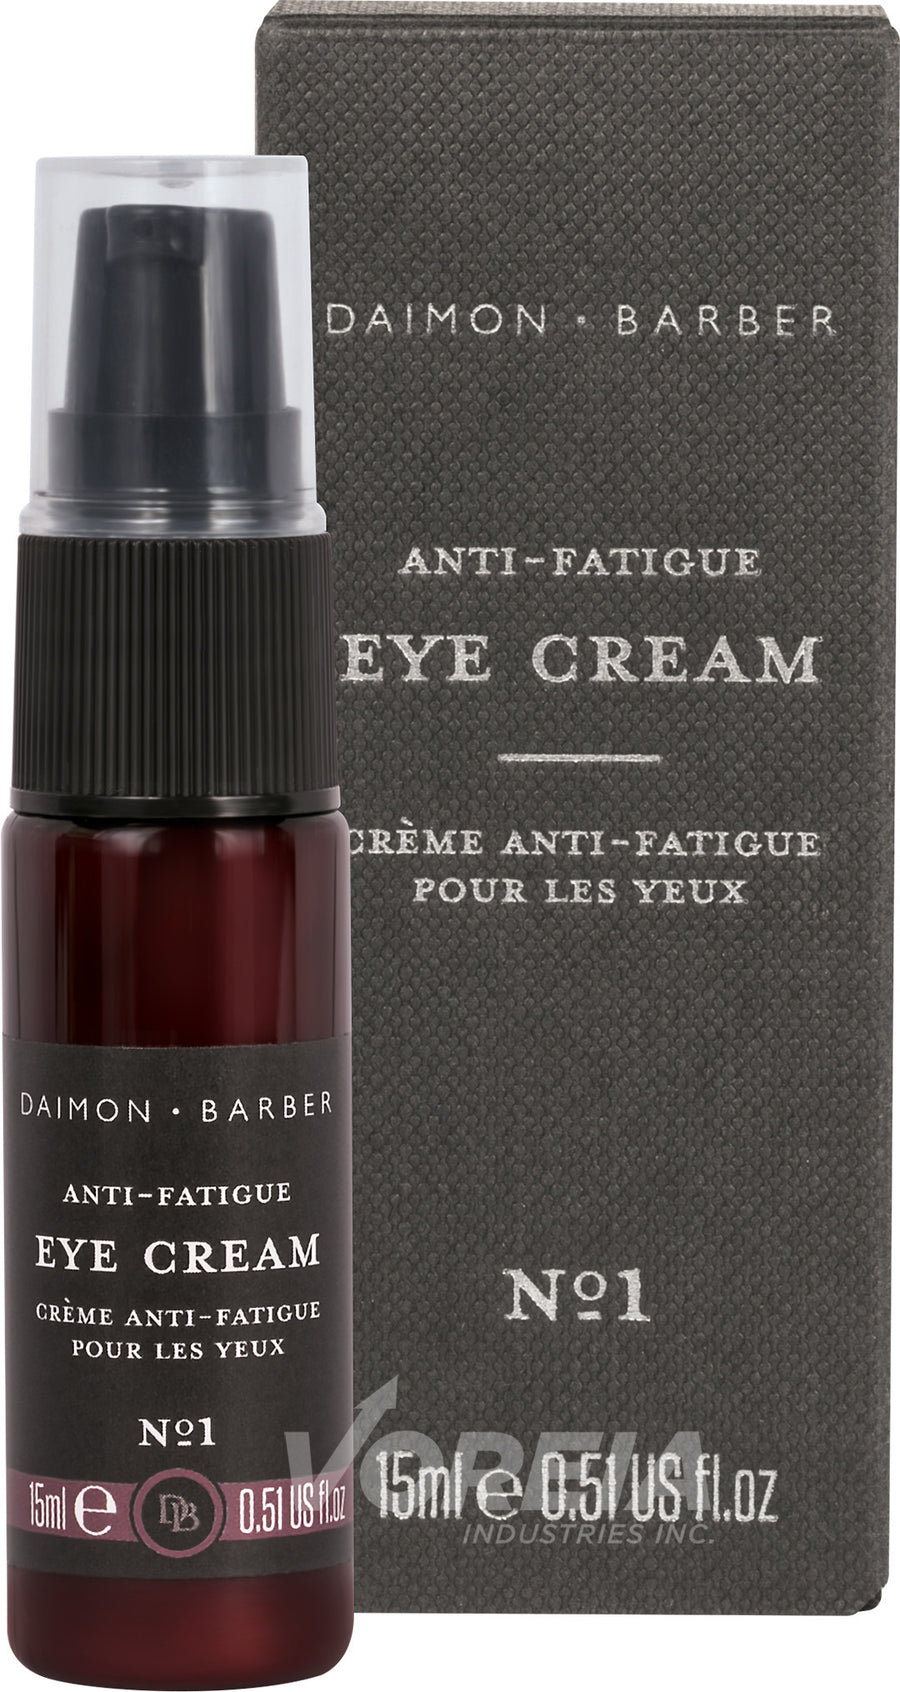 Daimon Barber Eye Cream 15ml